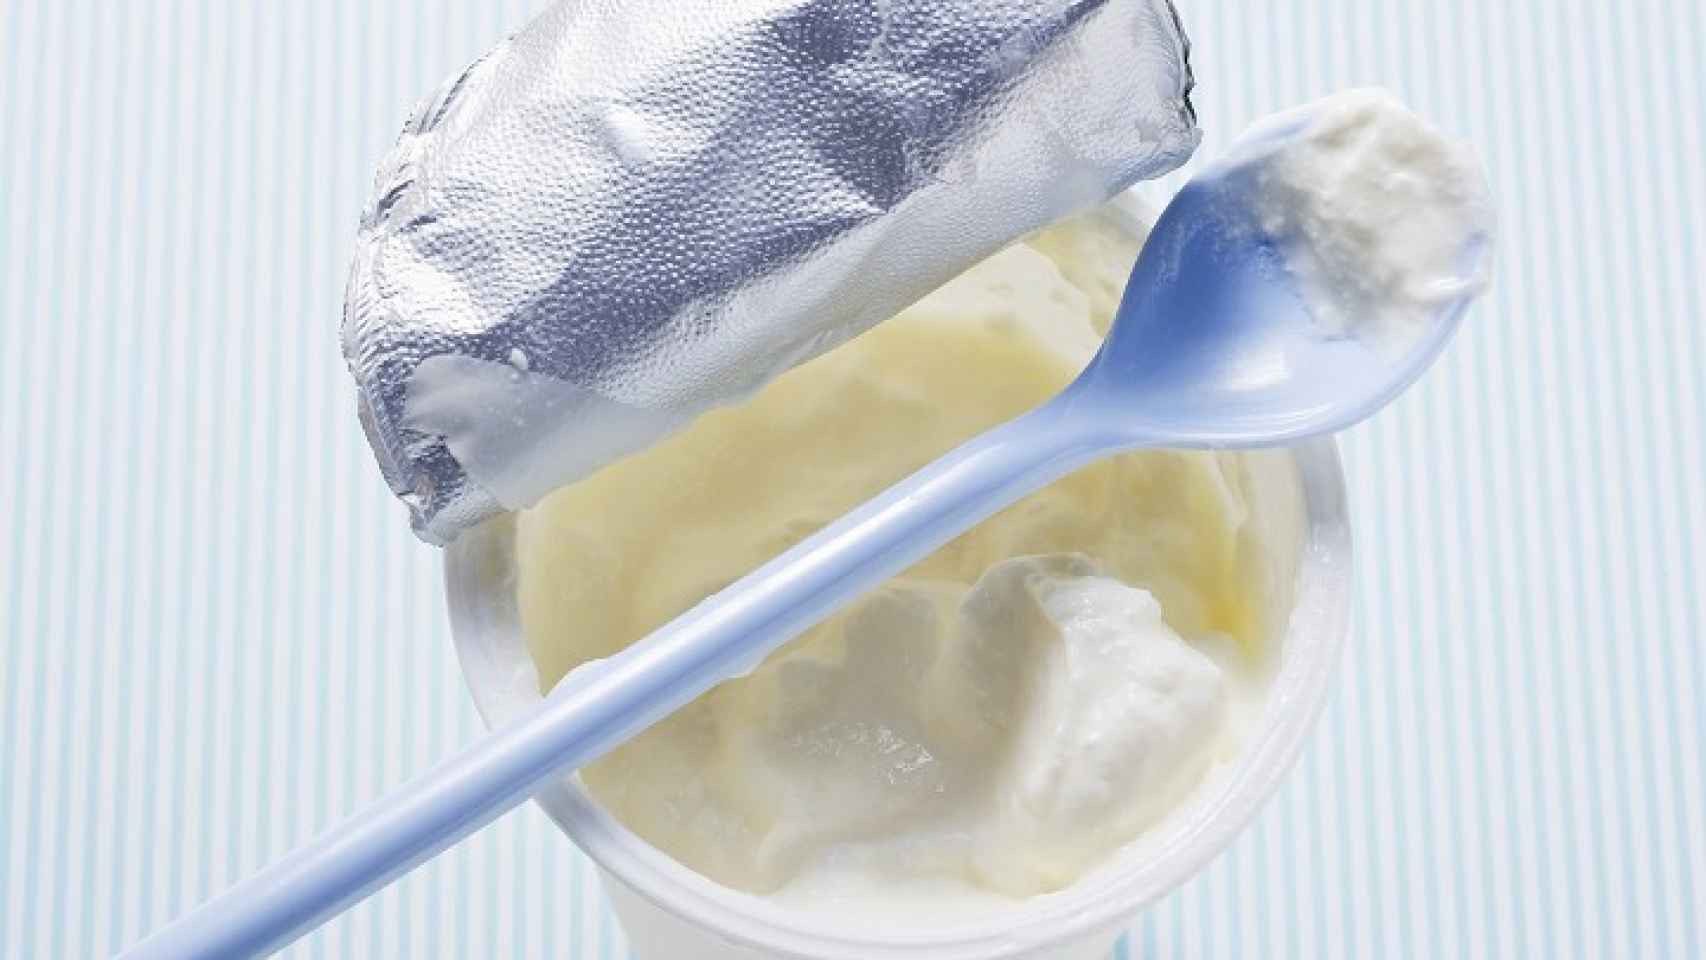 yogur sabor fresa con leche de pastoreo